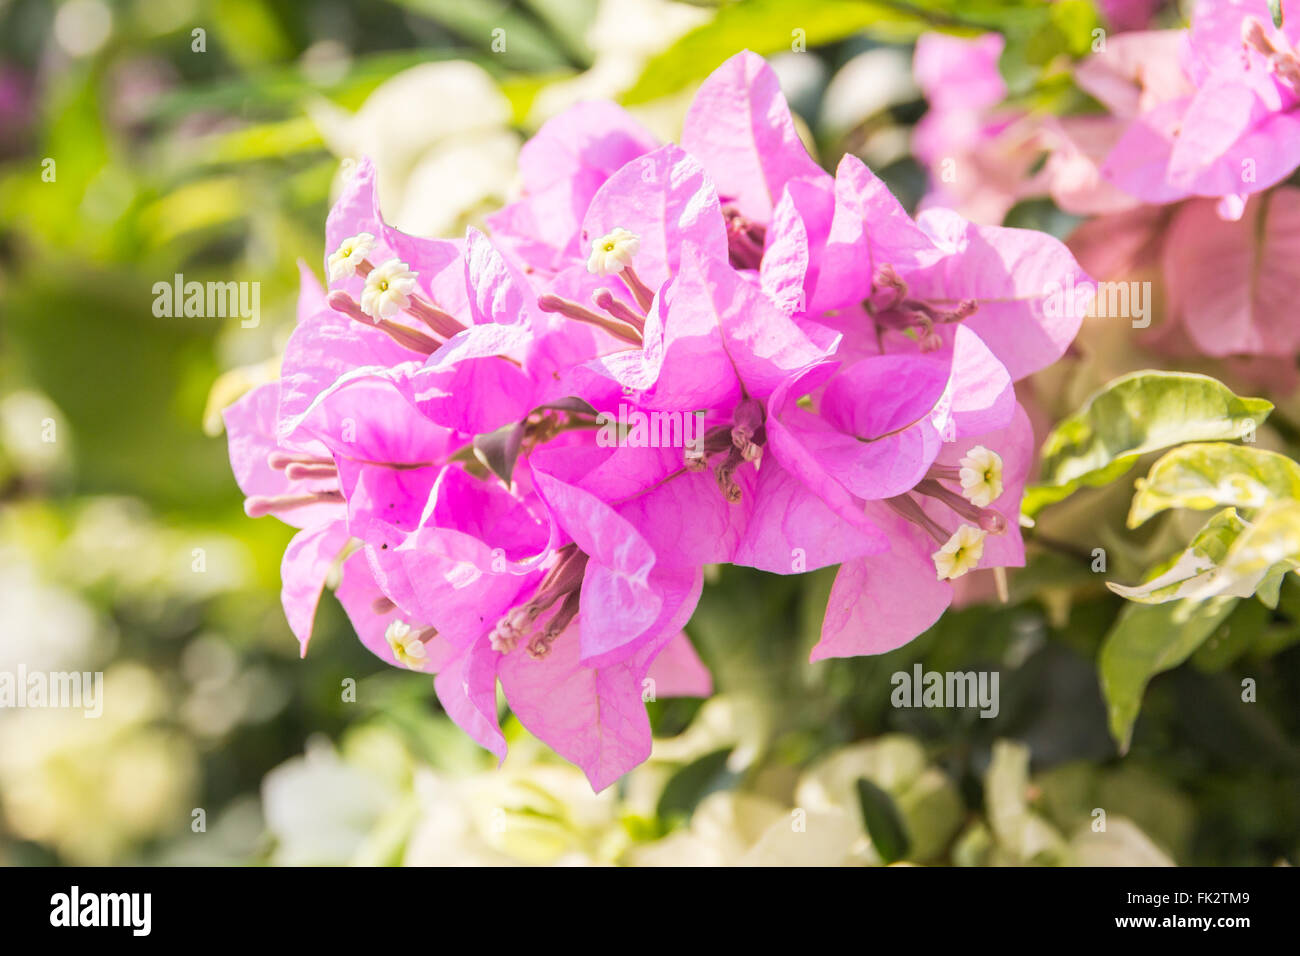 Belles fleurs de bougainvilliers magenta (Bougainvillea glabra Choisy), soft focus Banque D'Images